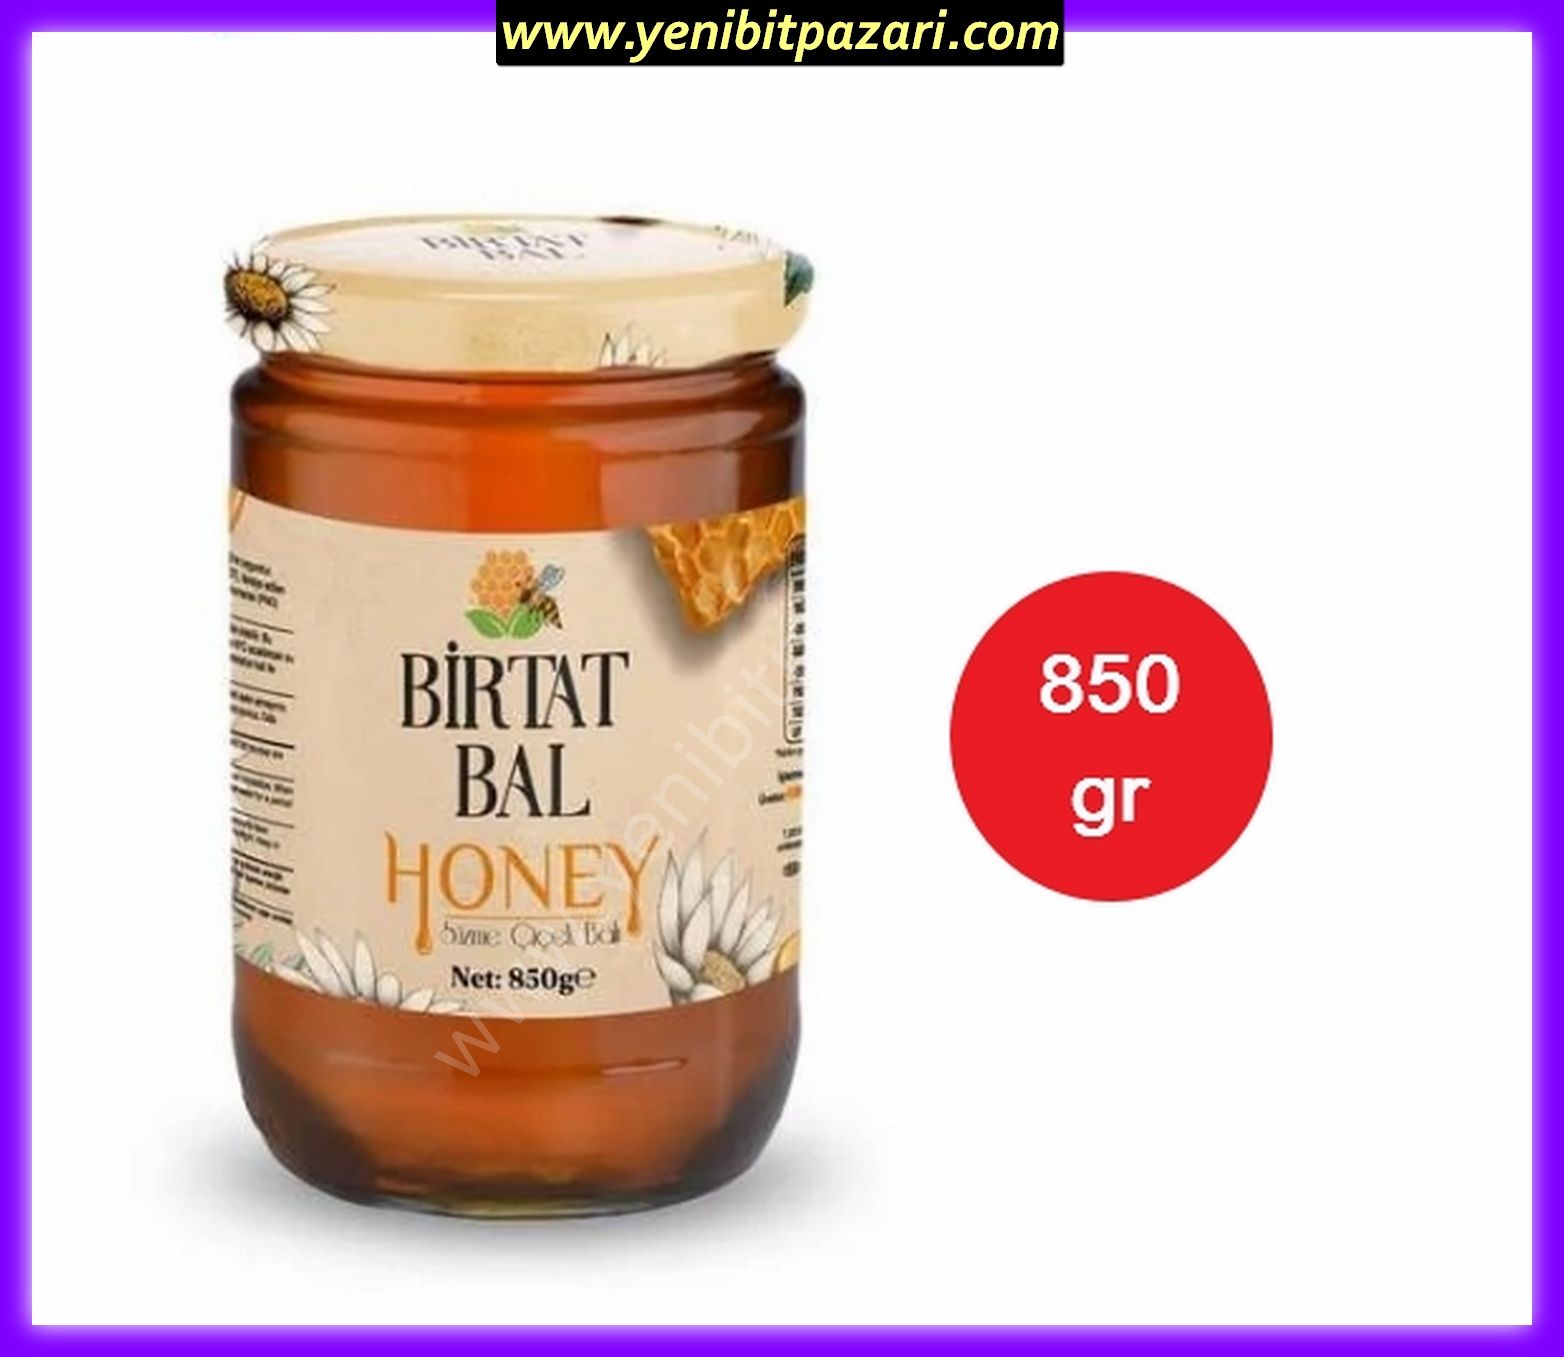 Birtat honey süzme çiçek balı bal 850gr cam kavanoz TETT 07,09,2025 ( 1 adet sipariş verebilirsiniz )